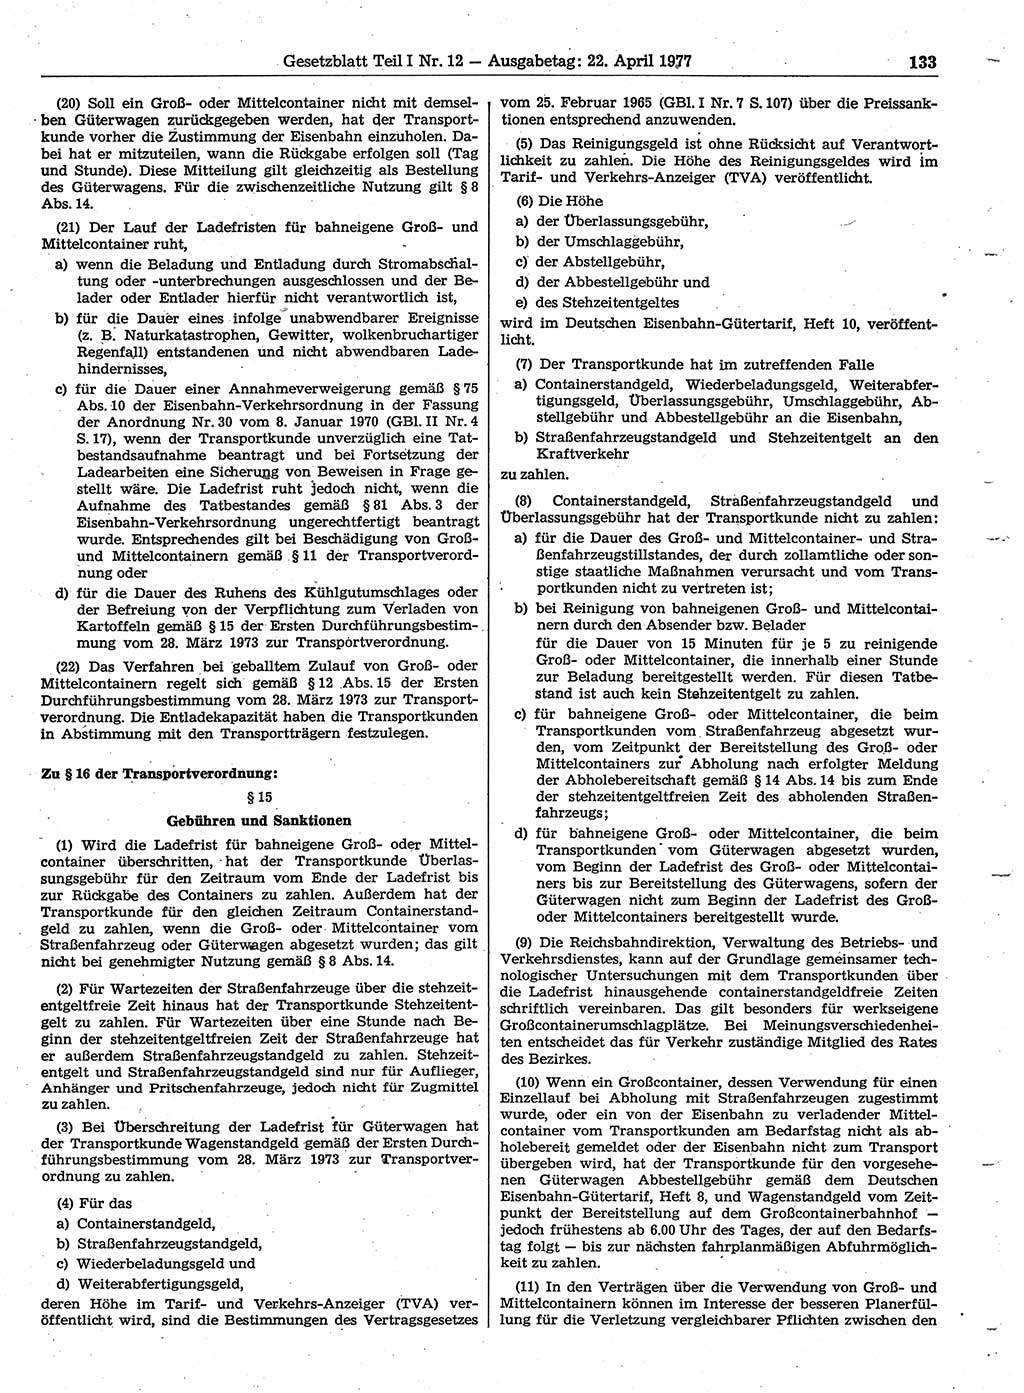 Gesetzblatt (GBl.) der Deutschen Demokratischen Republik (DDR) Teil Ⅰ 1977, Seite 133 (GBl. DDR Ⅰ 1977, S. 133)